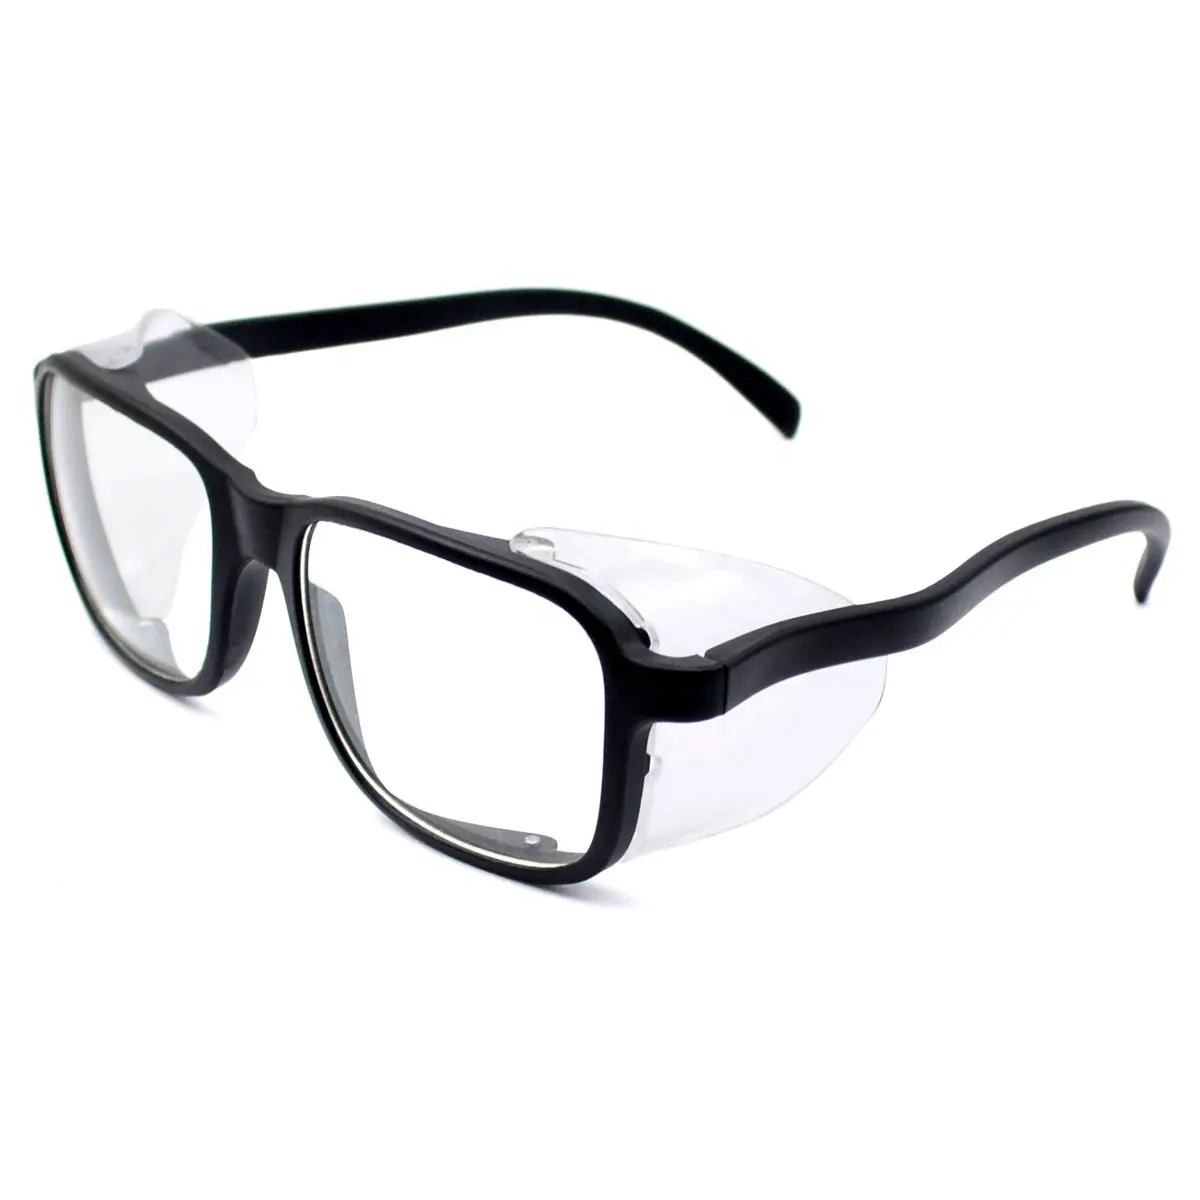 EN166 Escudos laterais inquebráveis Segurança do Trabalho Óculos de Segurança Óculos ANSI Z87.1 Óculos De Proteção